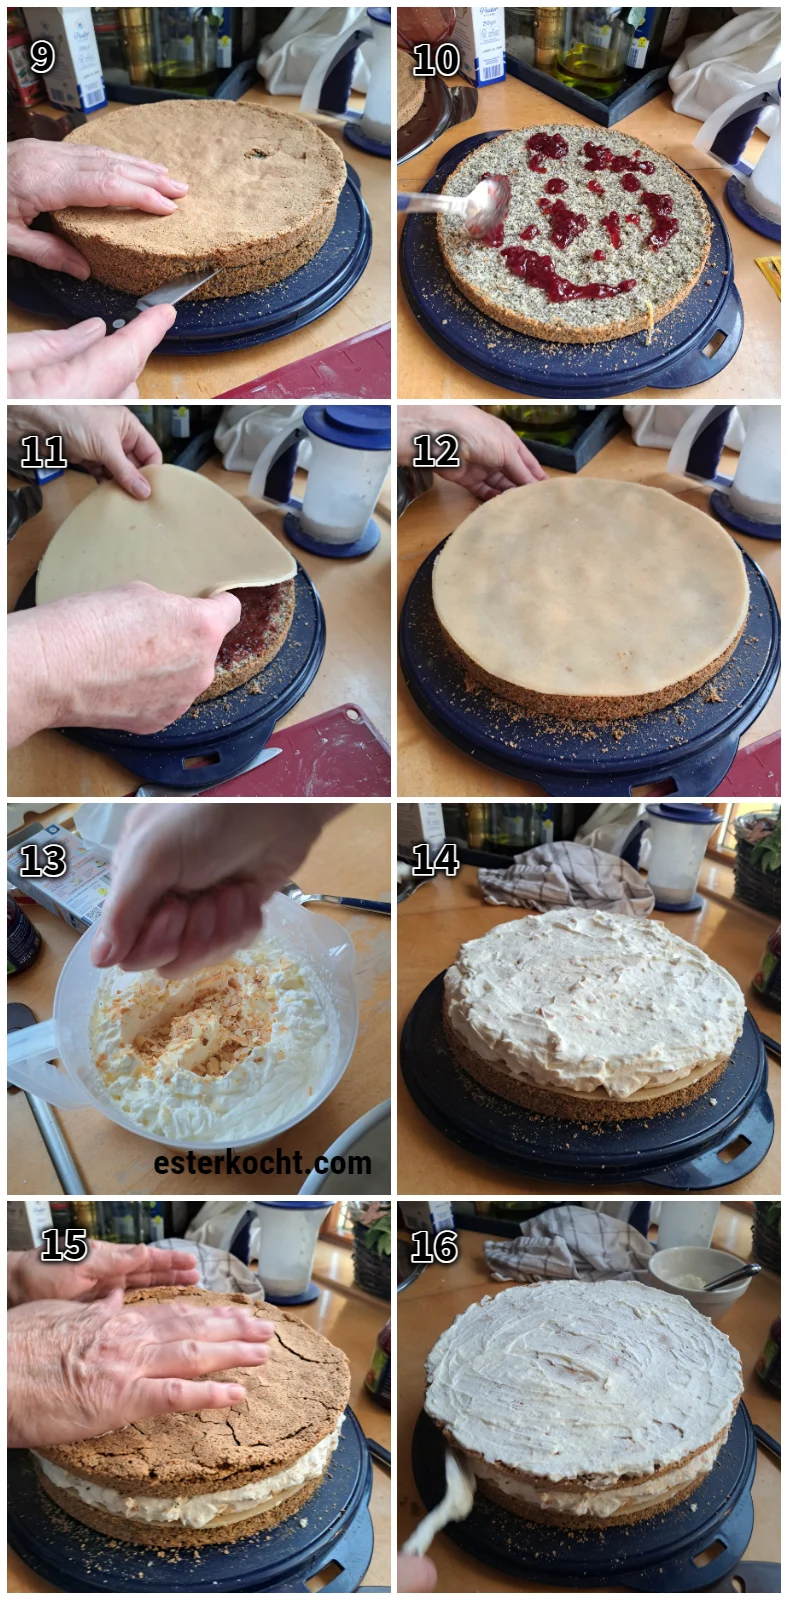 Die Collage zeigt die Herstellung einer Marzipan-Mohn-Torte, das Füllen der Torte mit Marmelade, geschlagener Sahne mit frisch gerösteten Mandelblättchen und einer Marzipandecke aus Marzipanrohmasse.